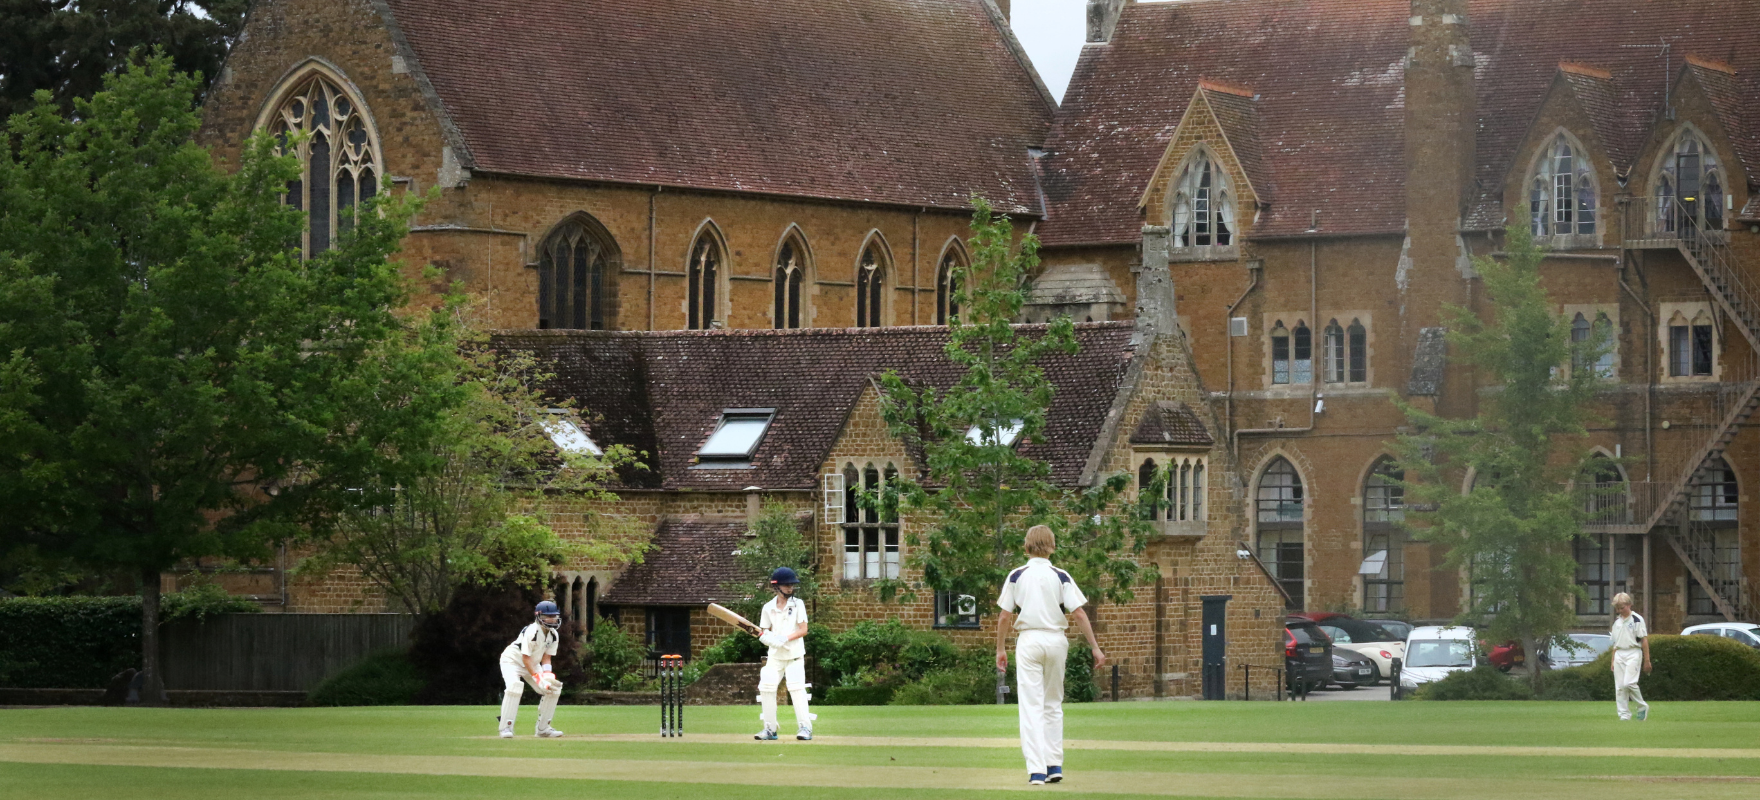 Bloxham School Pre School Cricket Festival on Main Field